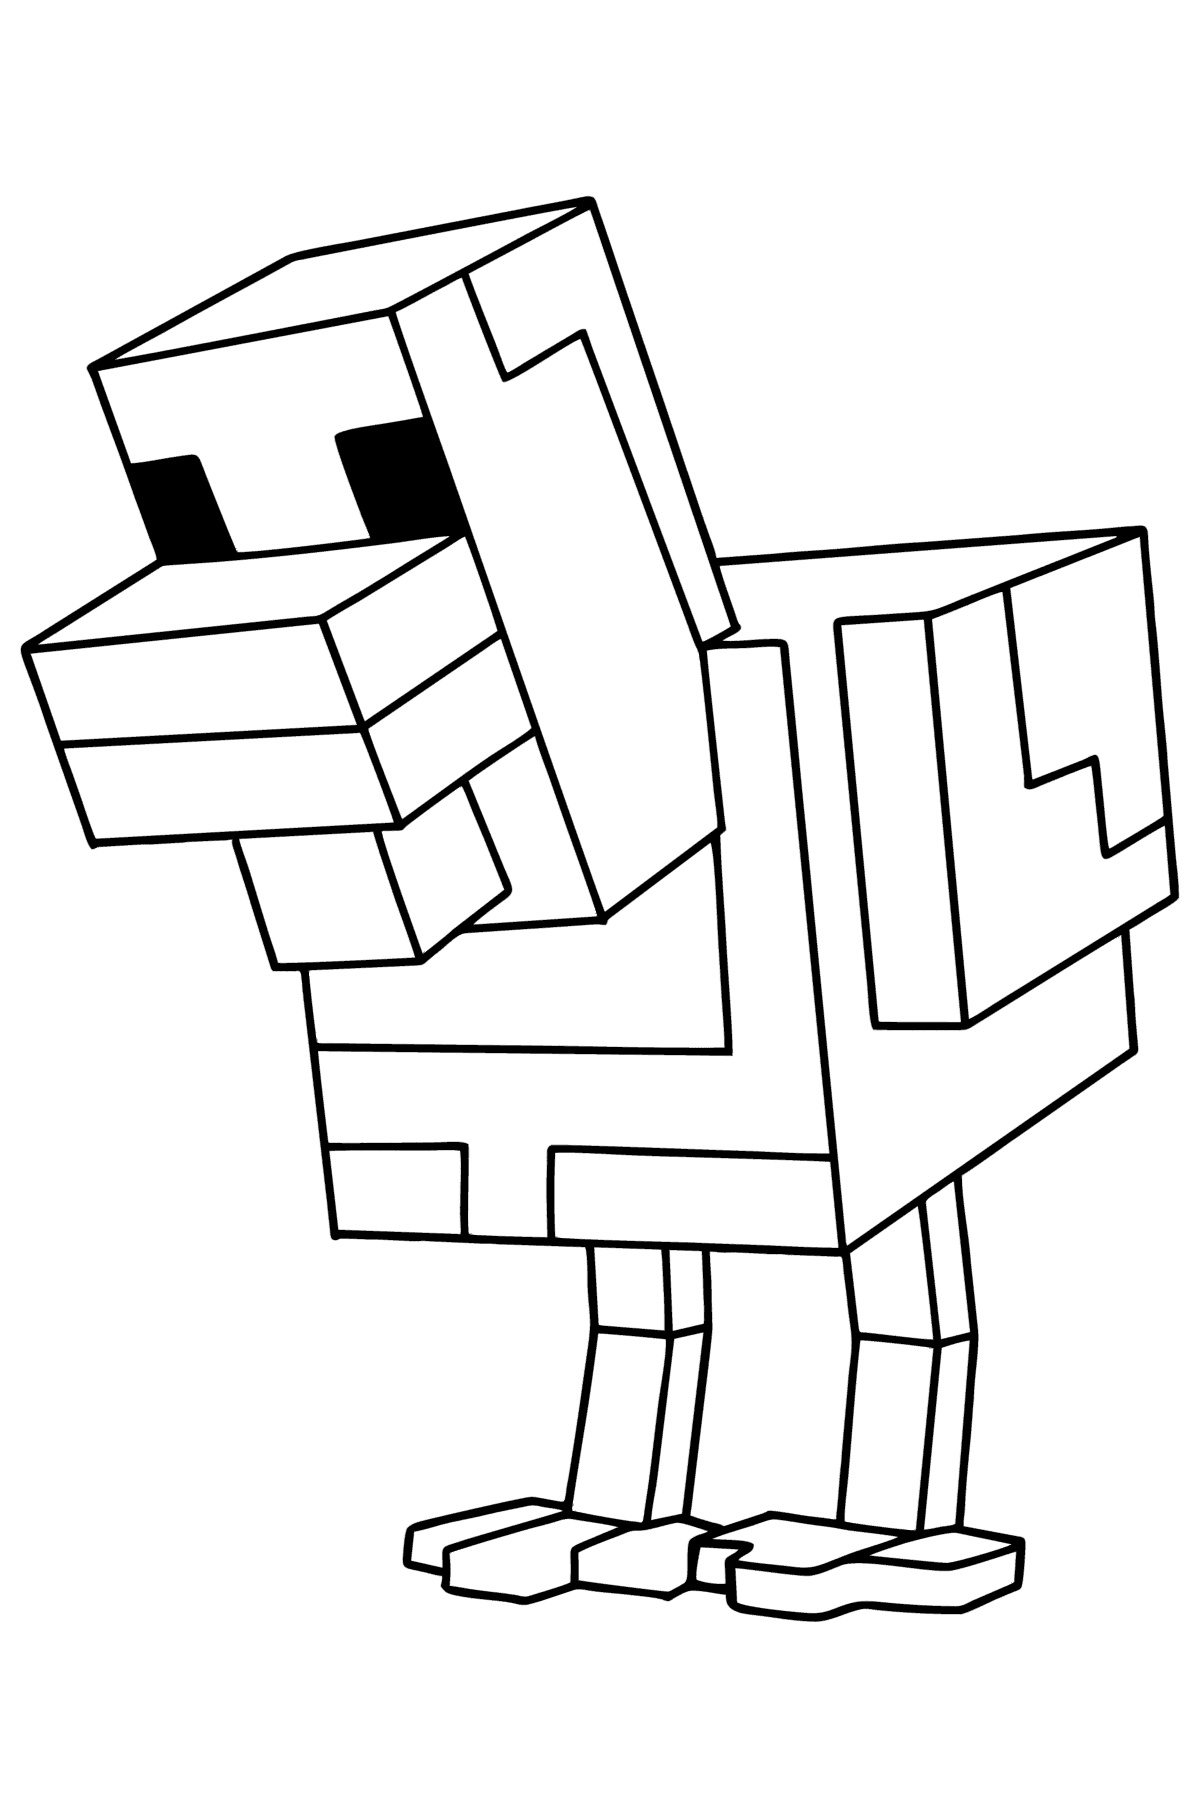 Boyama sayfası Minecraft Chicken - Boyamalar çocuklar için